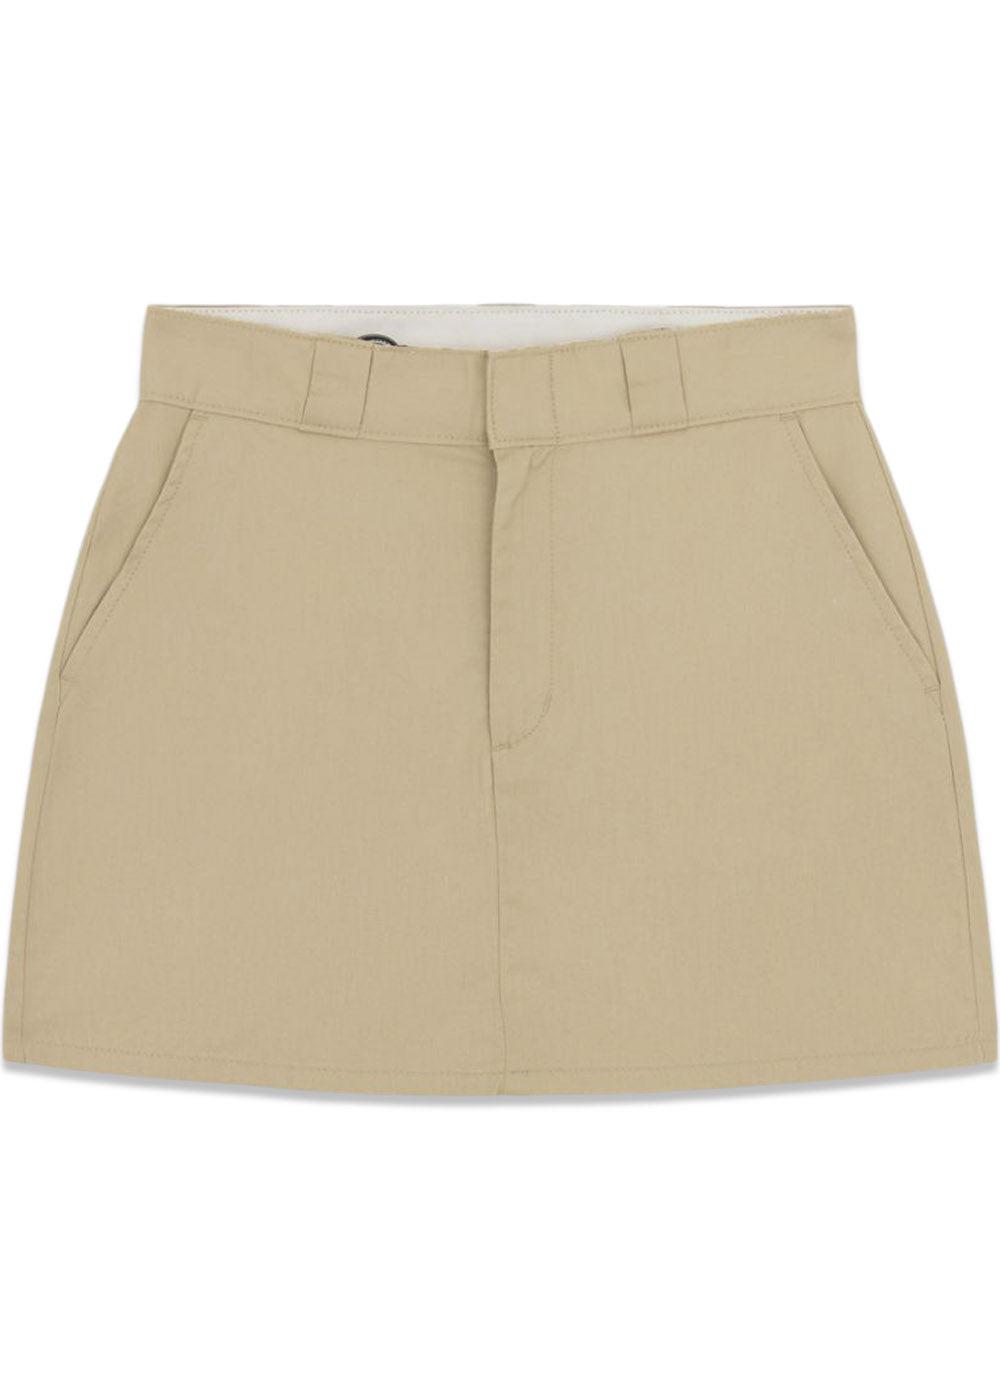 Multi Pocket Skirt - Khaki